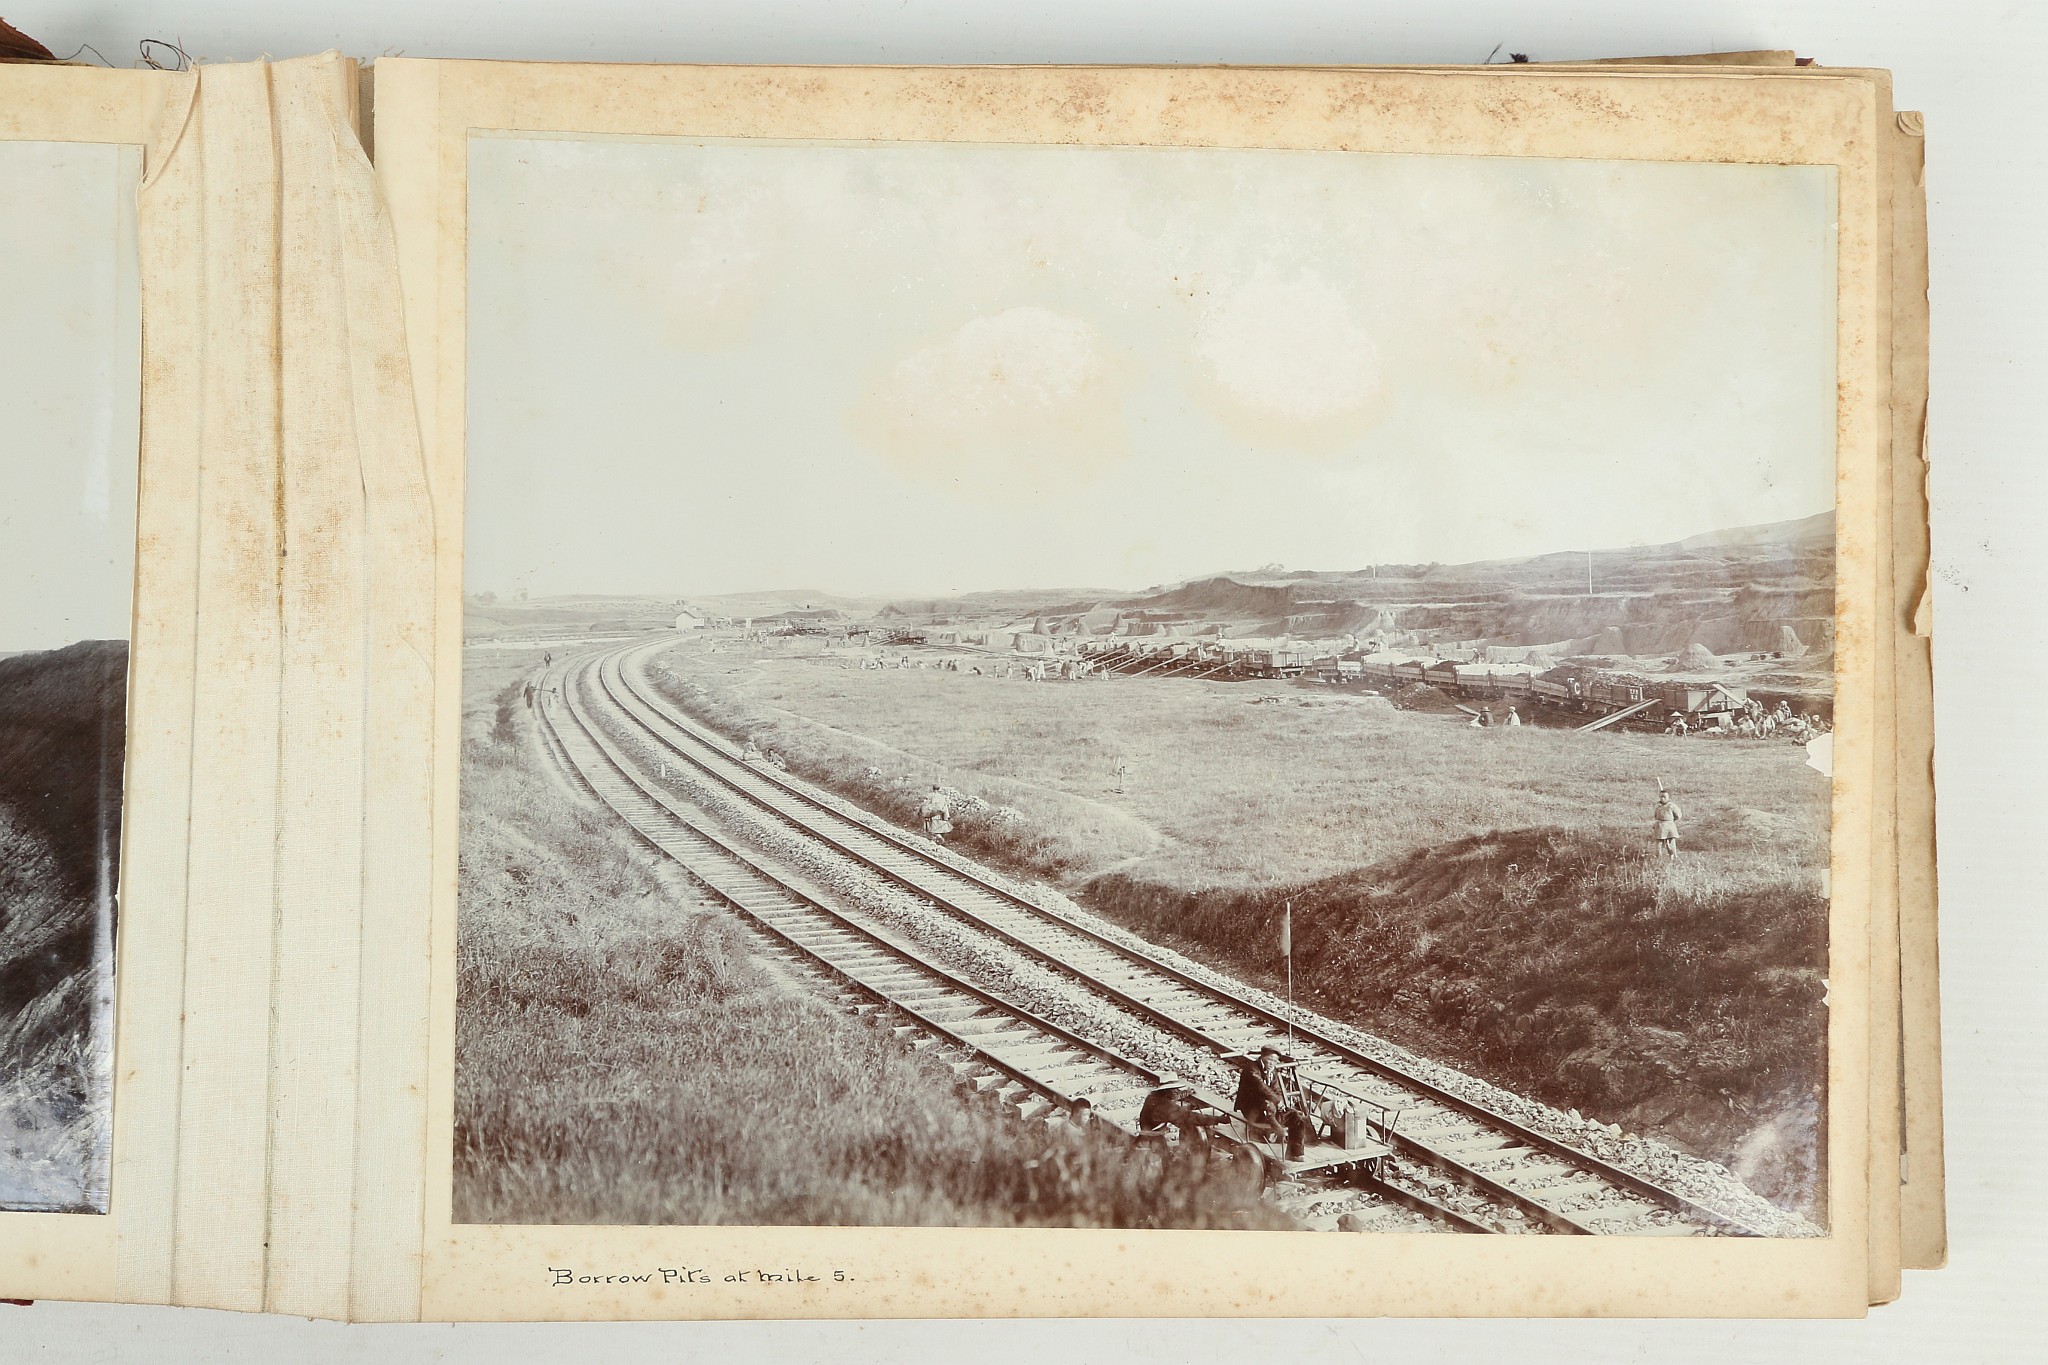 A PHOTOGRAPHIC ALBUM OF THE TIENTSIN-PUKOW RAILWAY - Image 17 of 60